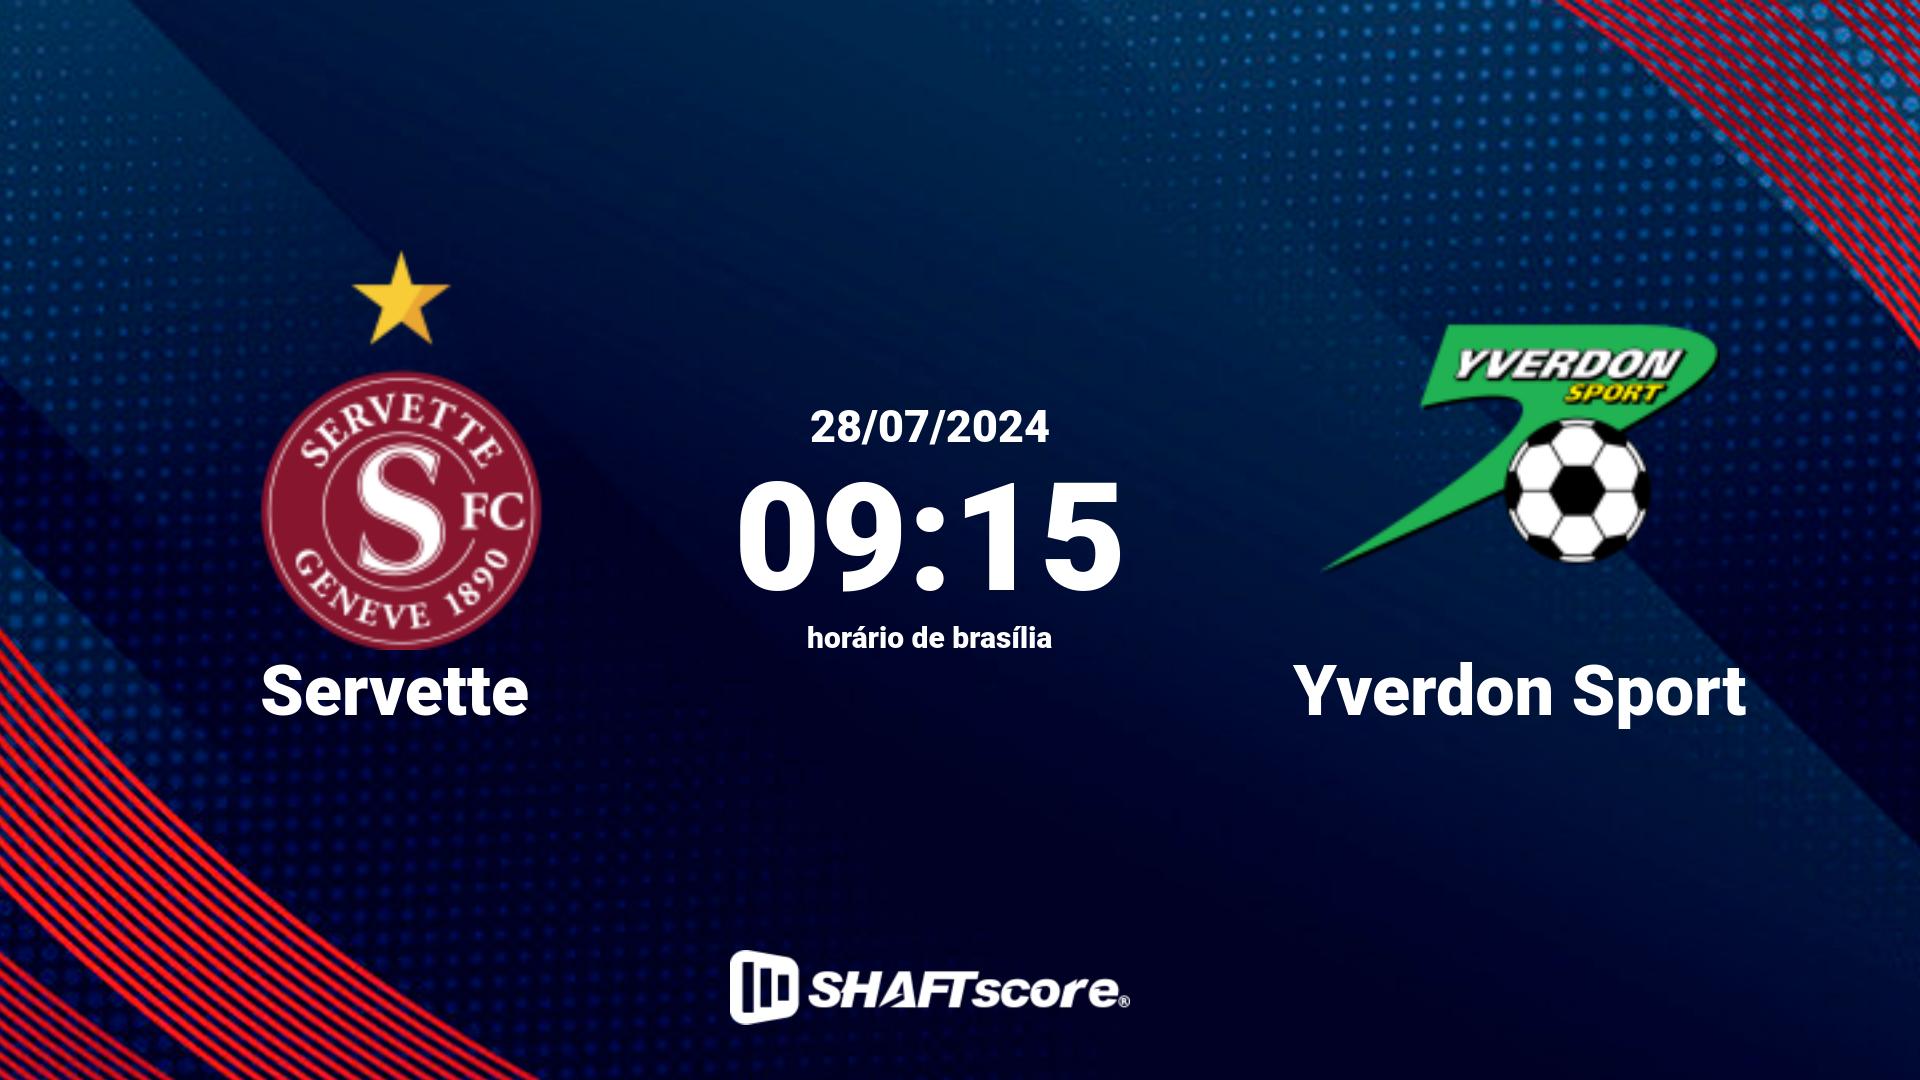 Estatísticas do jogo Servette vs Yverdon Sport 28.07 09:15